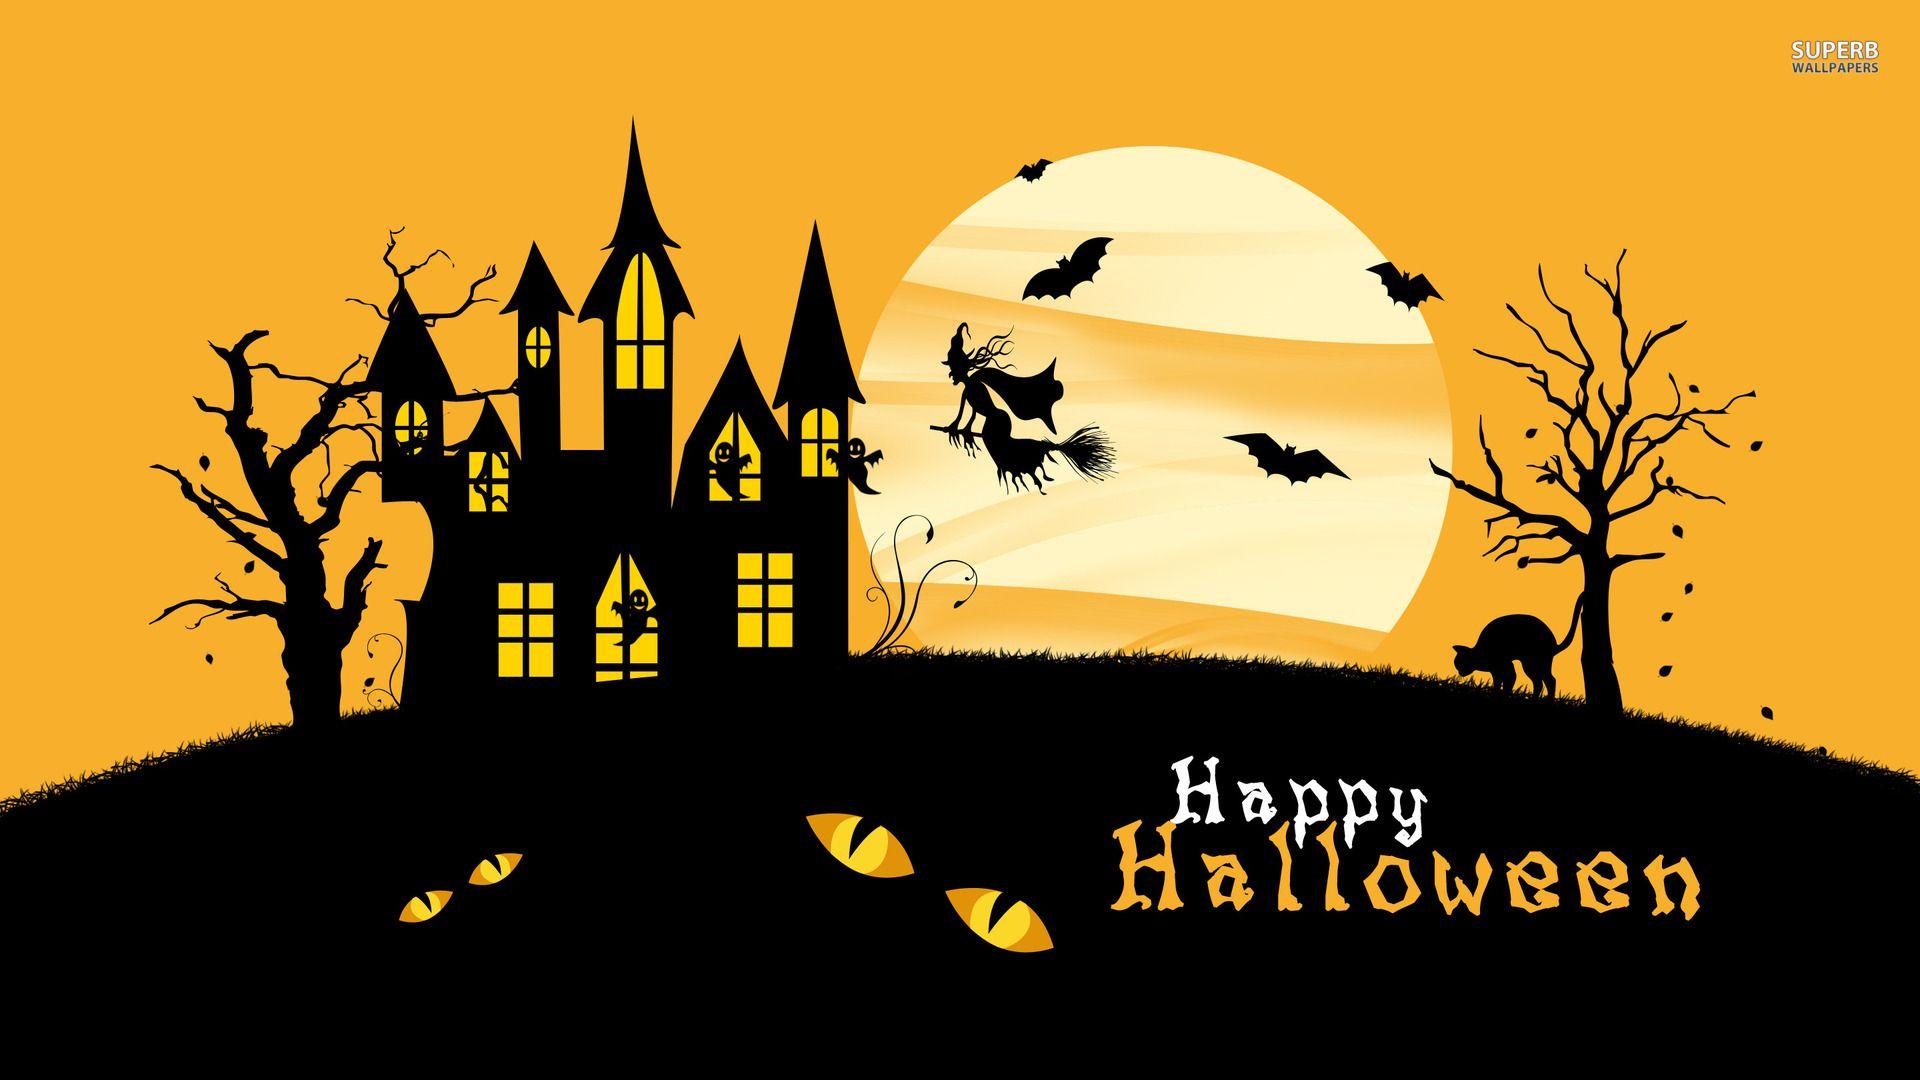 75+ Happy Halloween Wallpapers For Mobile, Desktop, iPhone